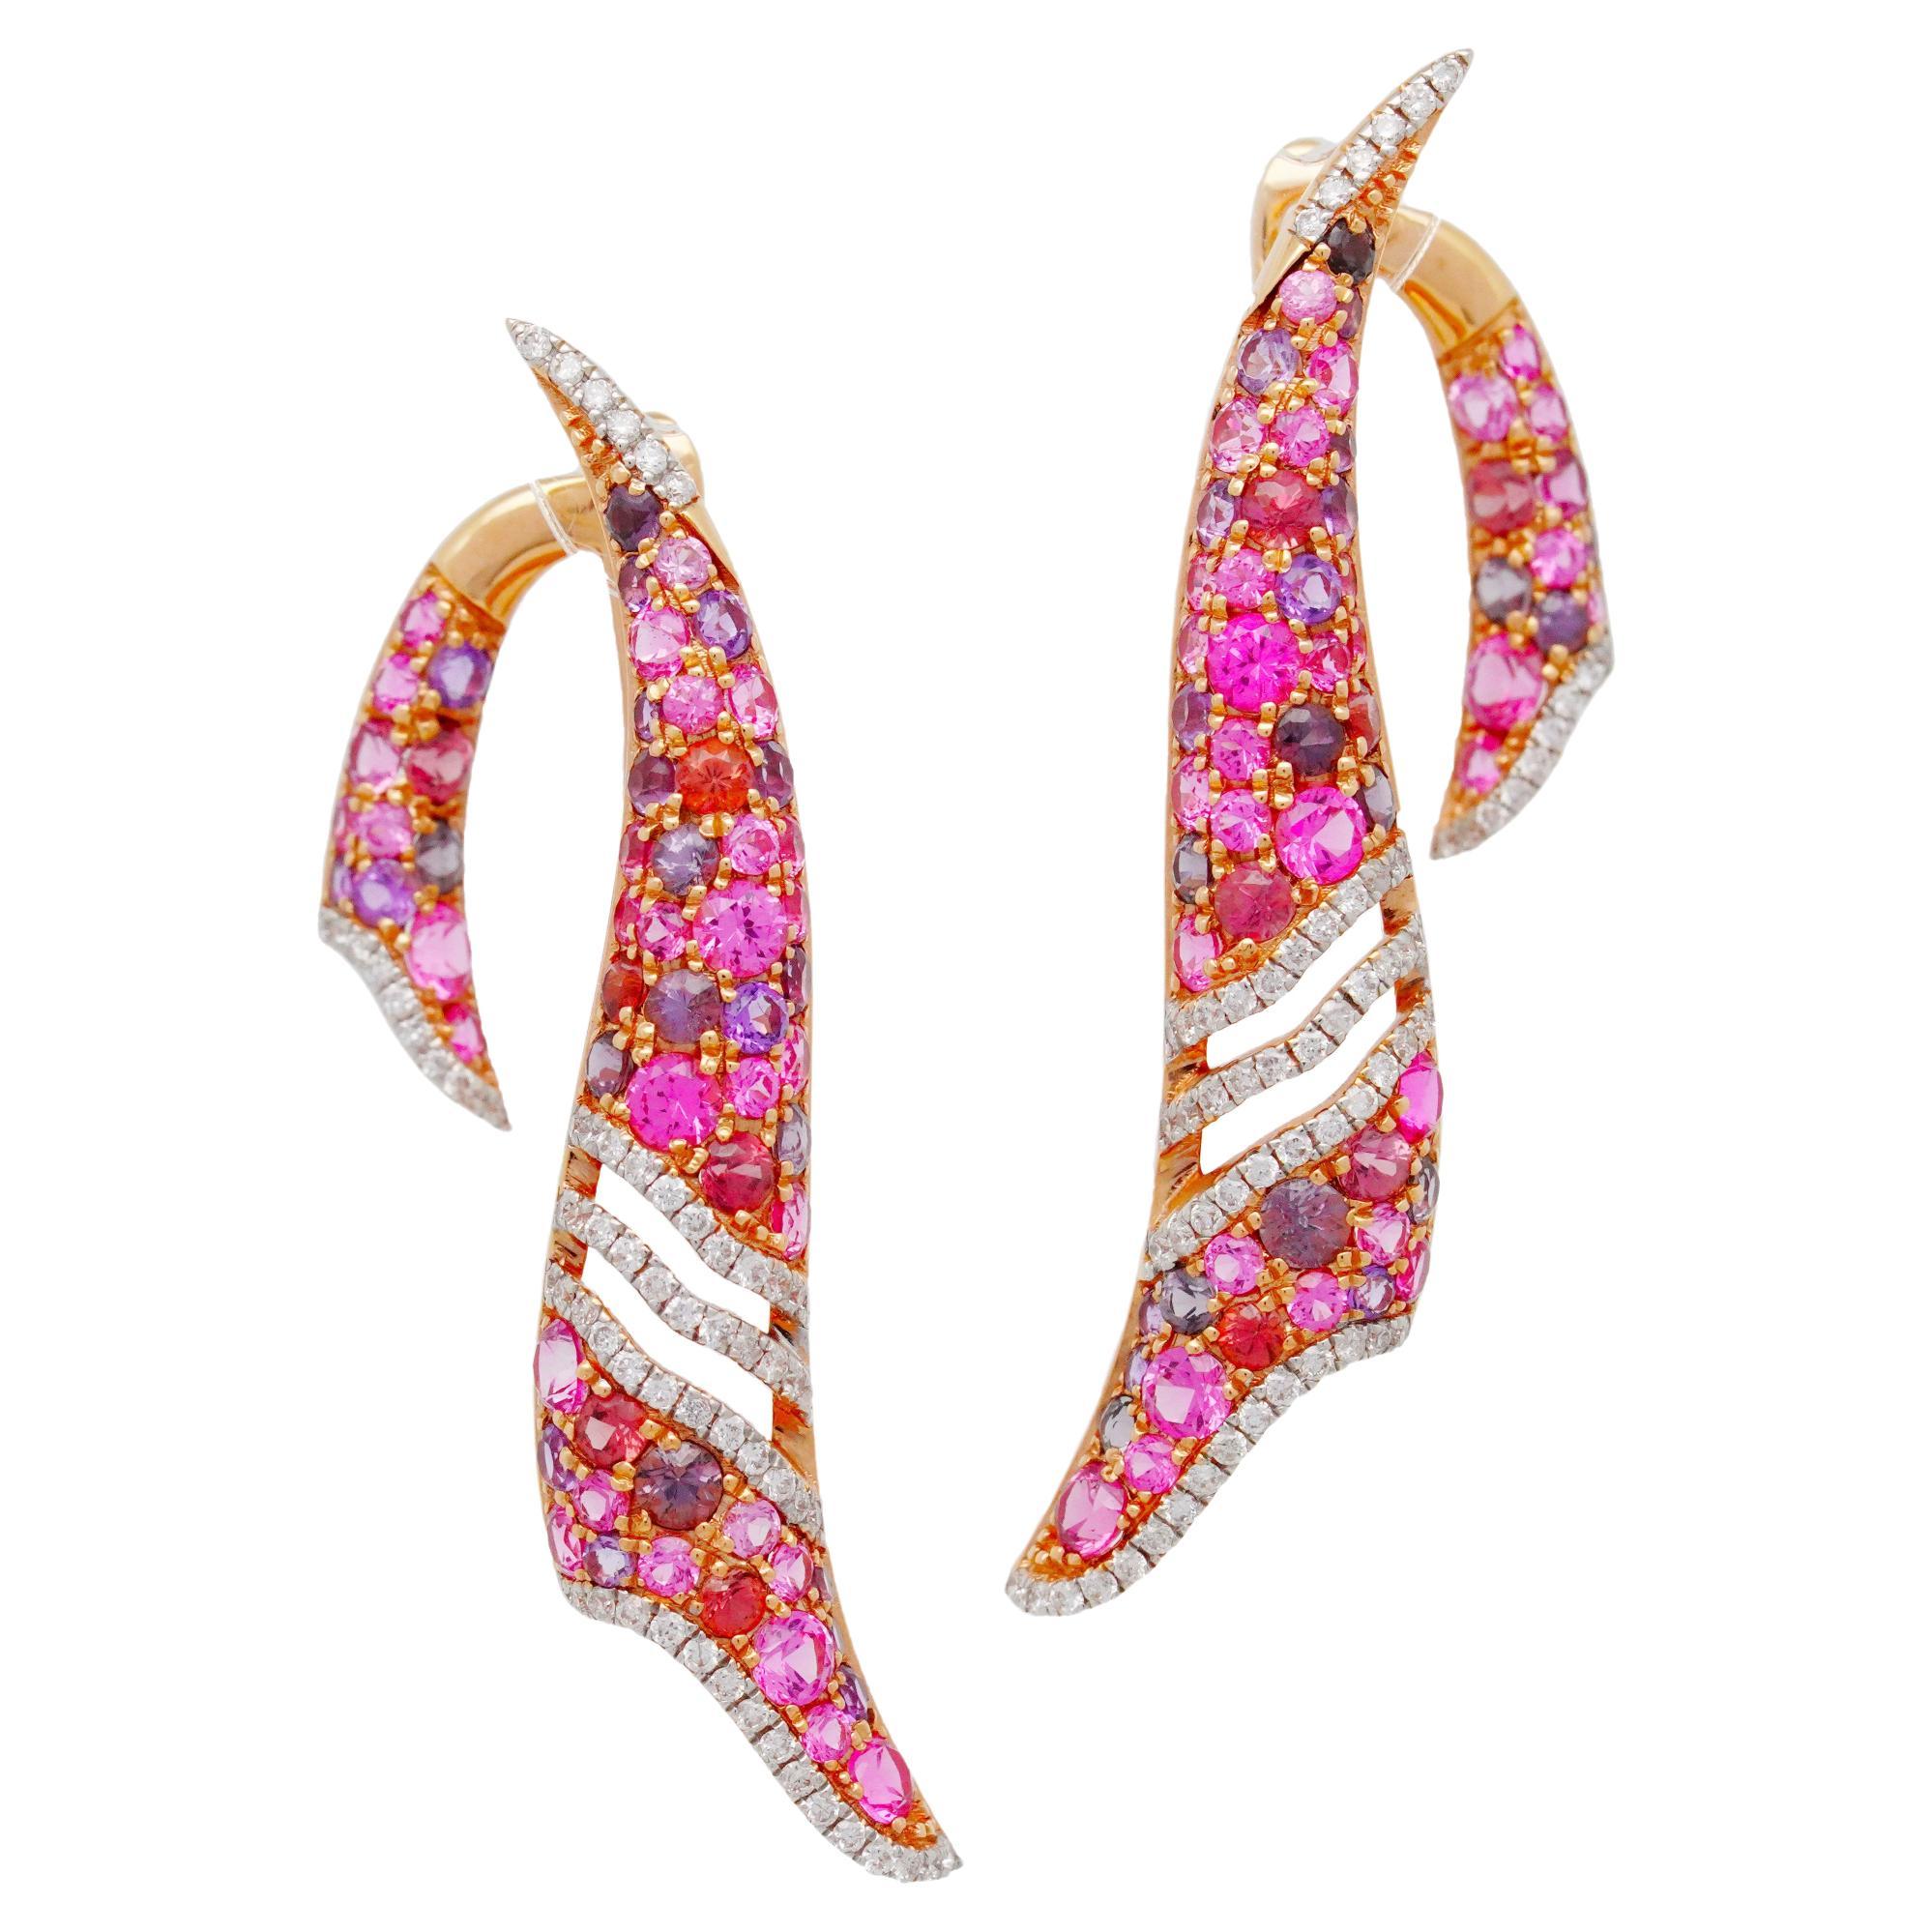 Pink Spinel, Amethyst & Diamond Clasp Earrings, 18K Gold, Austy Lee